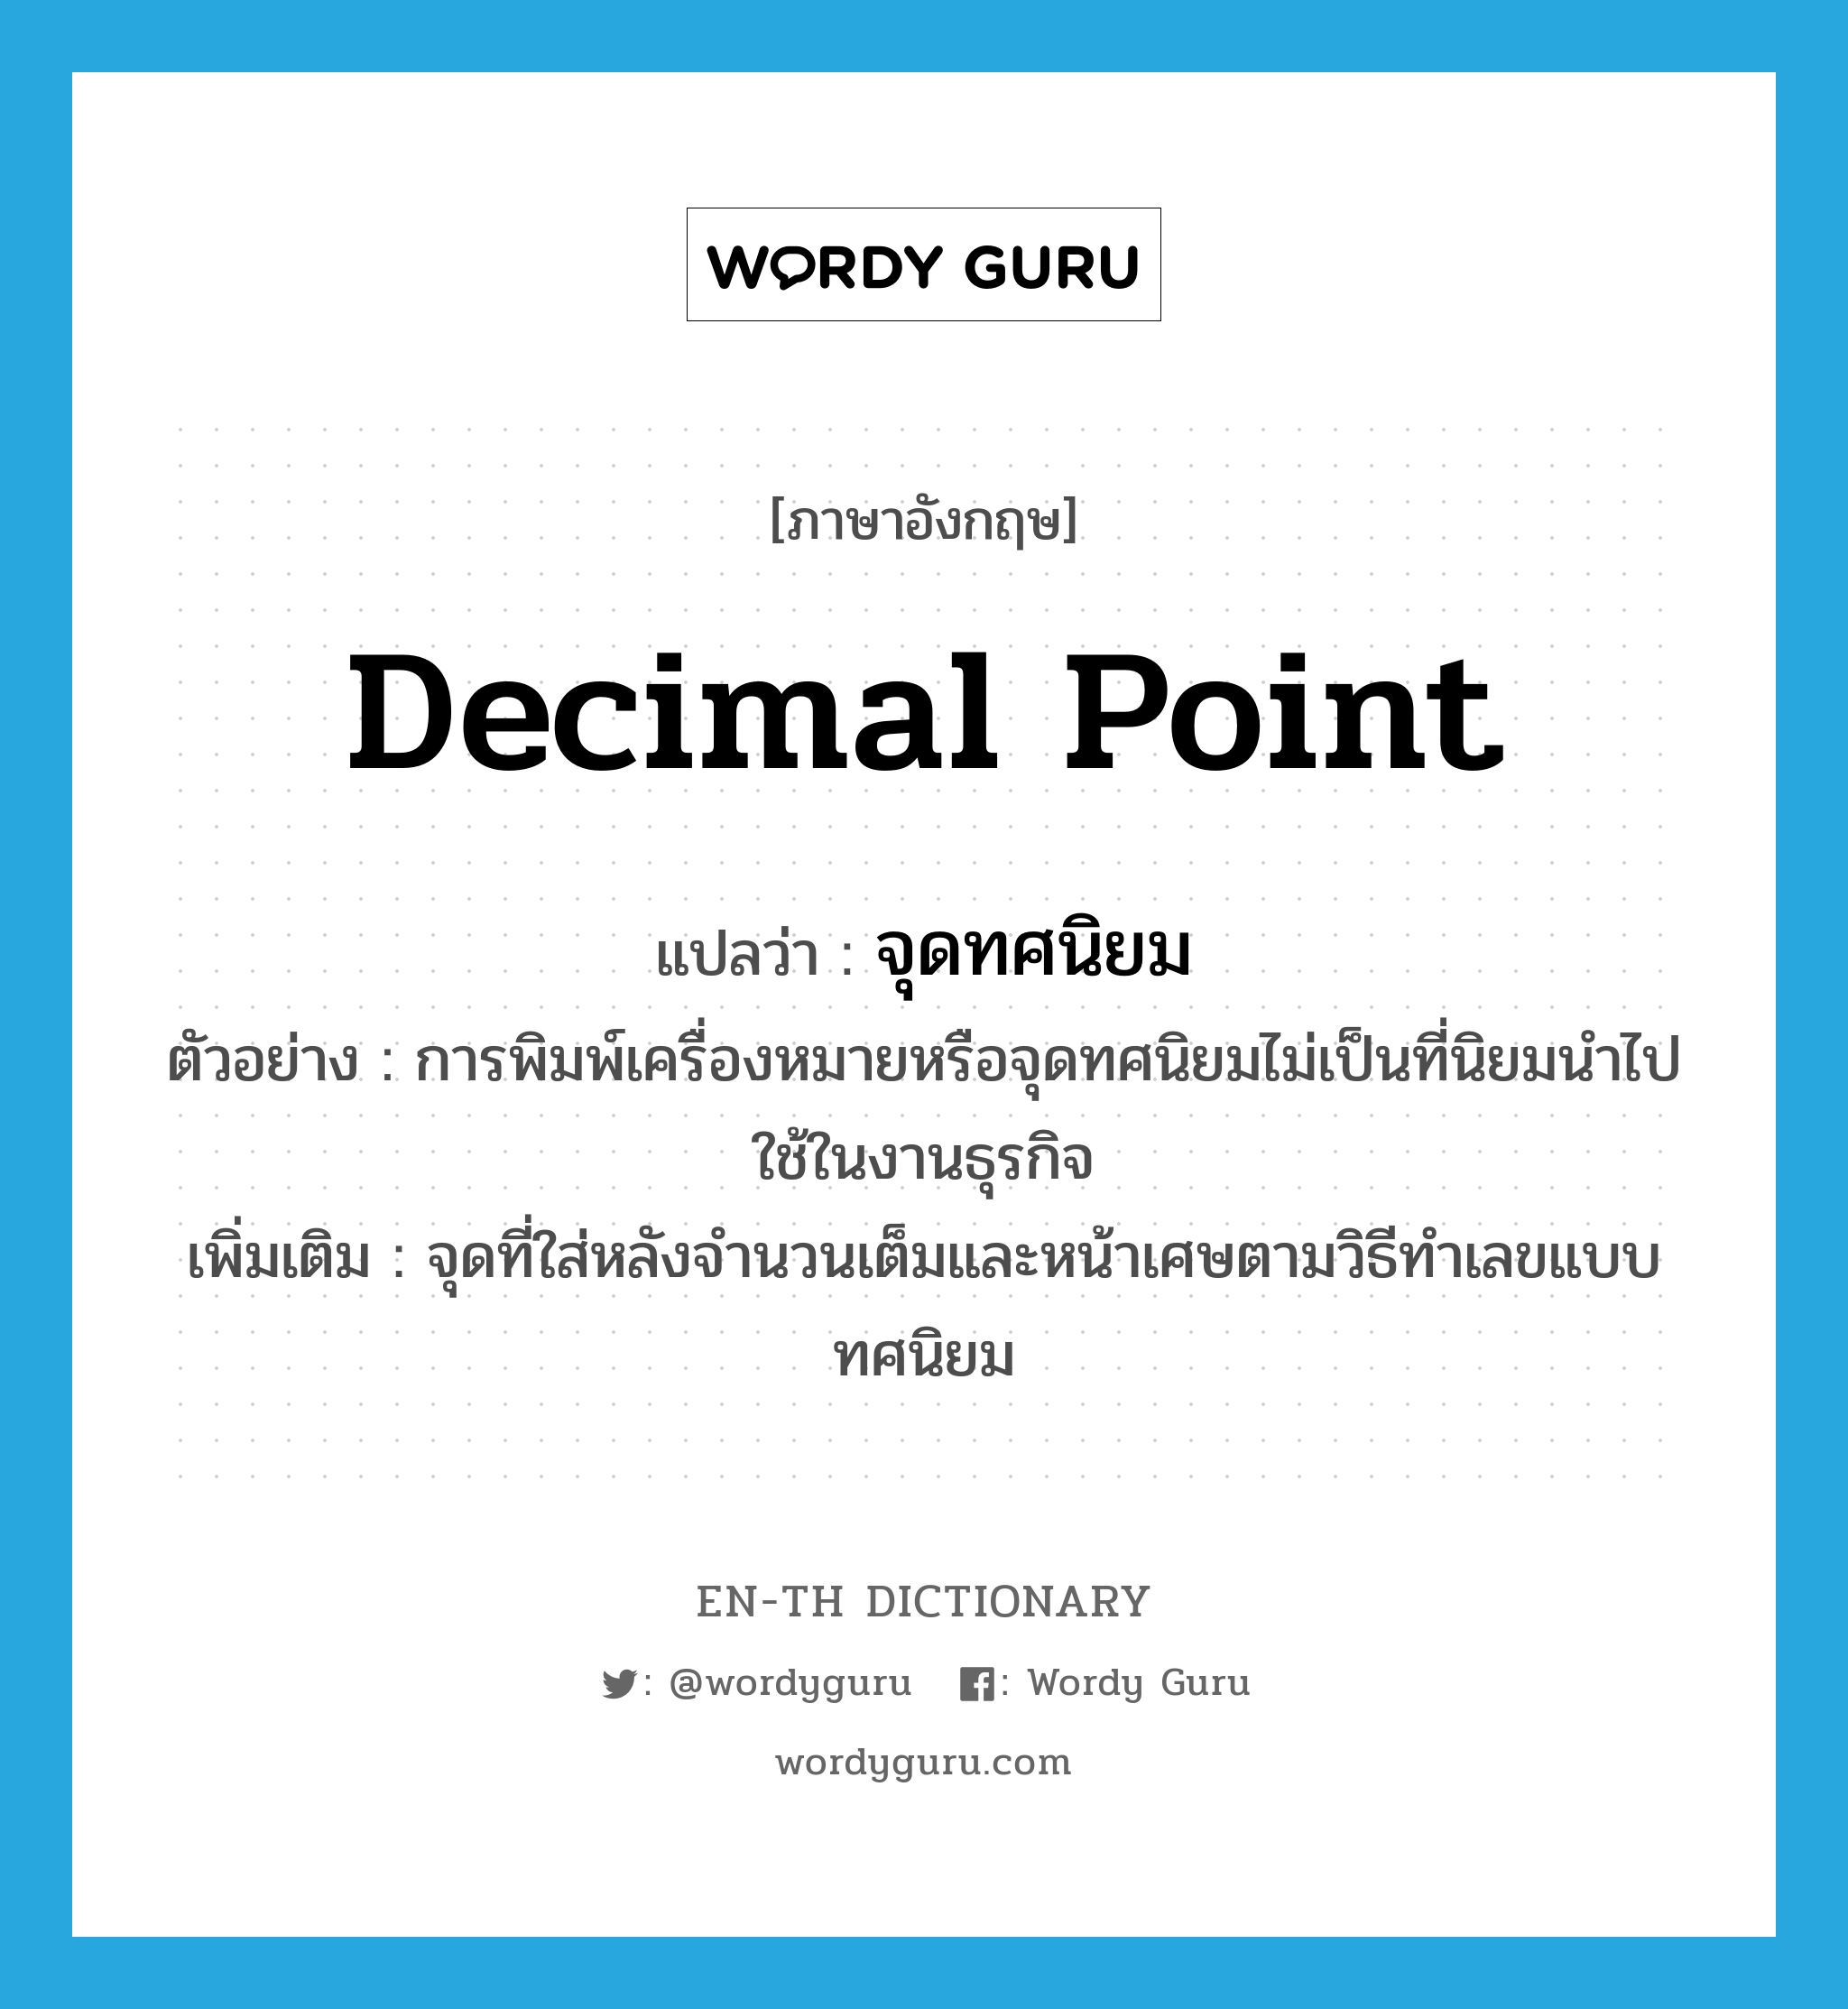 decimal point แปลว่า?, คำศัพท์ภาษาอังกฤษ decimal point แปลว่า จุดทศนิยม ประเภท N ตัวอย่าง การพิมพ์เครื่องหมายหรือจุดทศนิยมไม่เป็นที่นิยมนำไปใช้ในงานธุรกิจ เพิ่มเติม จุดที่ใส่หลังจำนวนเต็มและหน้าเศษตามวิธีทำเลขแบบทศนิยม หมวด N